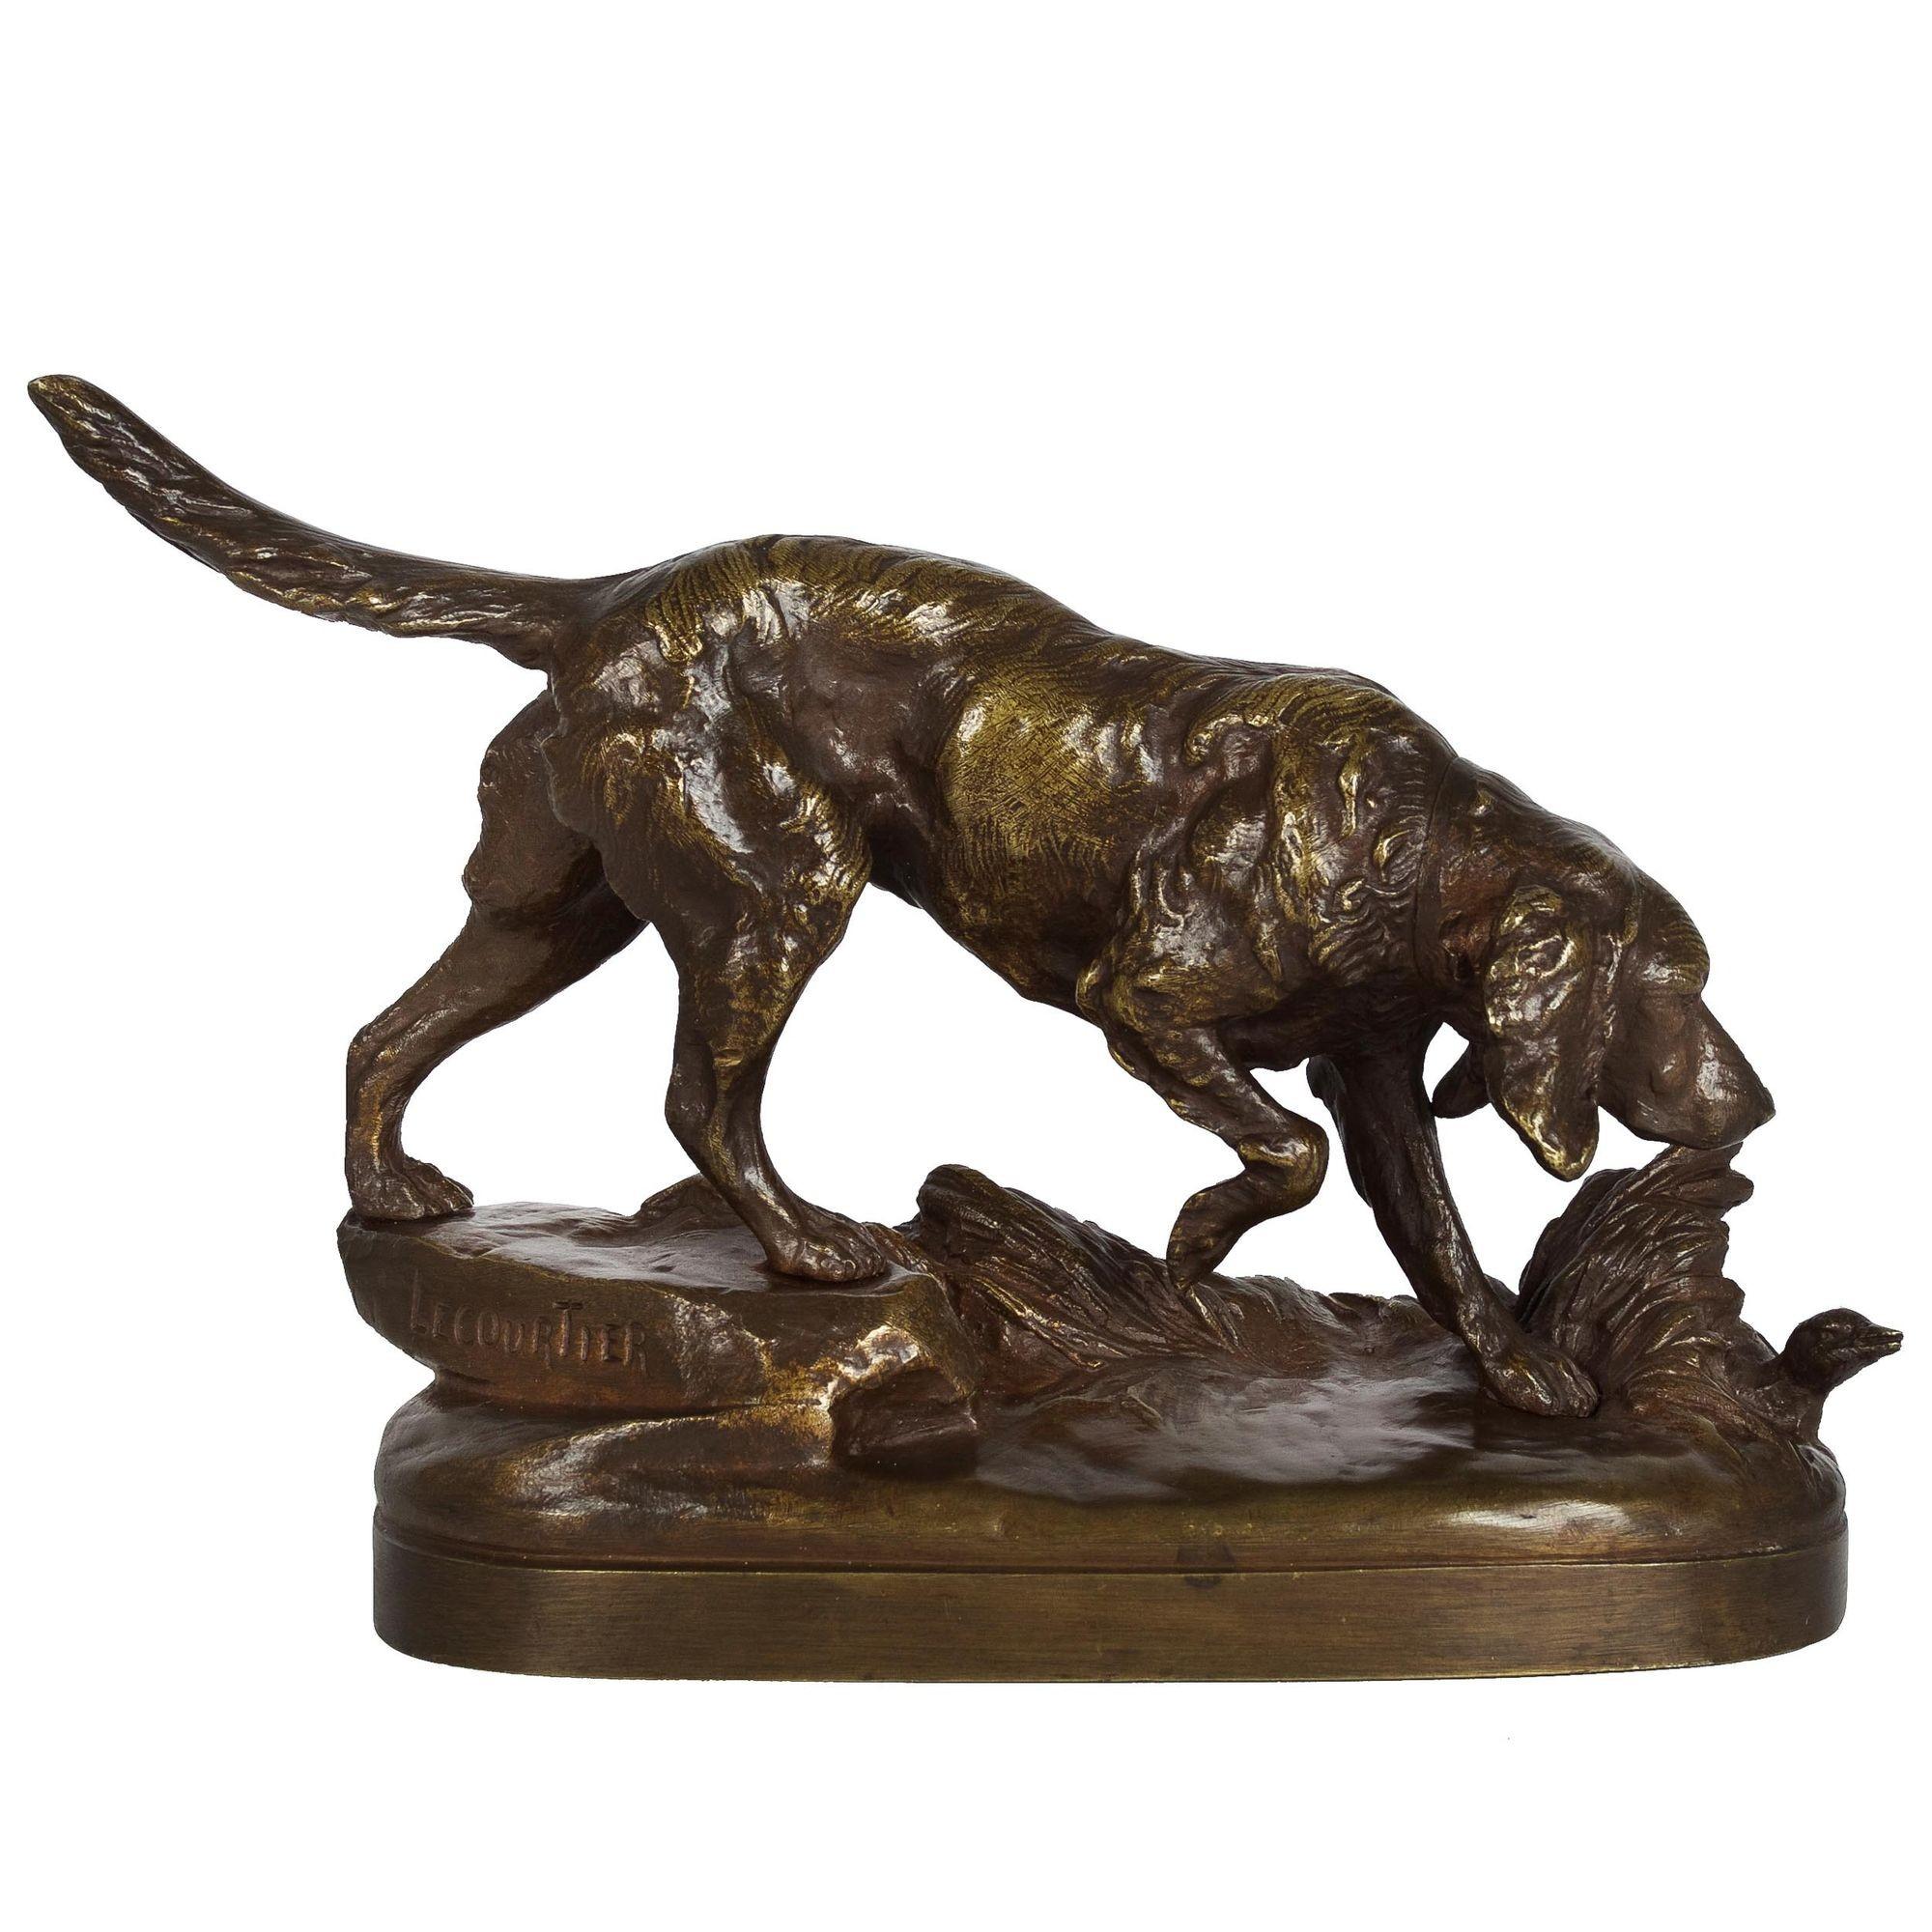 Un bon modèle de bronze coulé au sable du début du 20e siècle représentant un chien de chasse qui a attrapé la piste en descendant le long d'un sentier sur une base naturaliste. Signé dans le rocher 